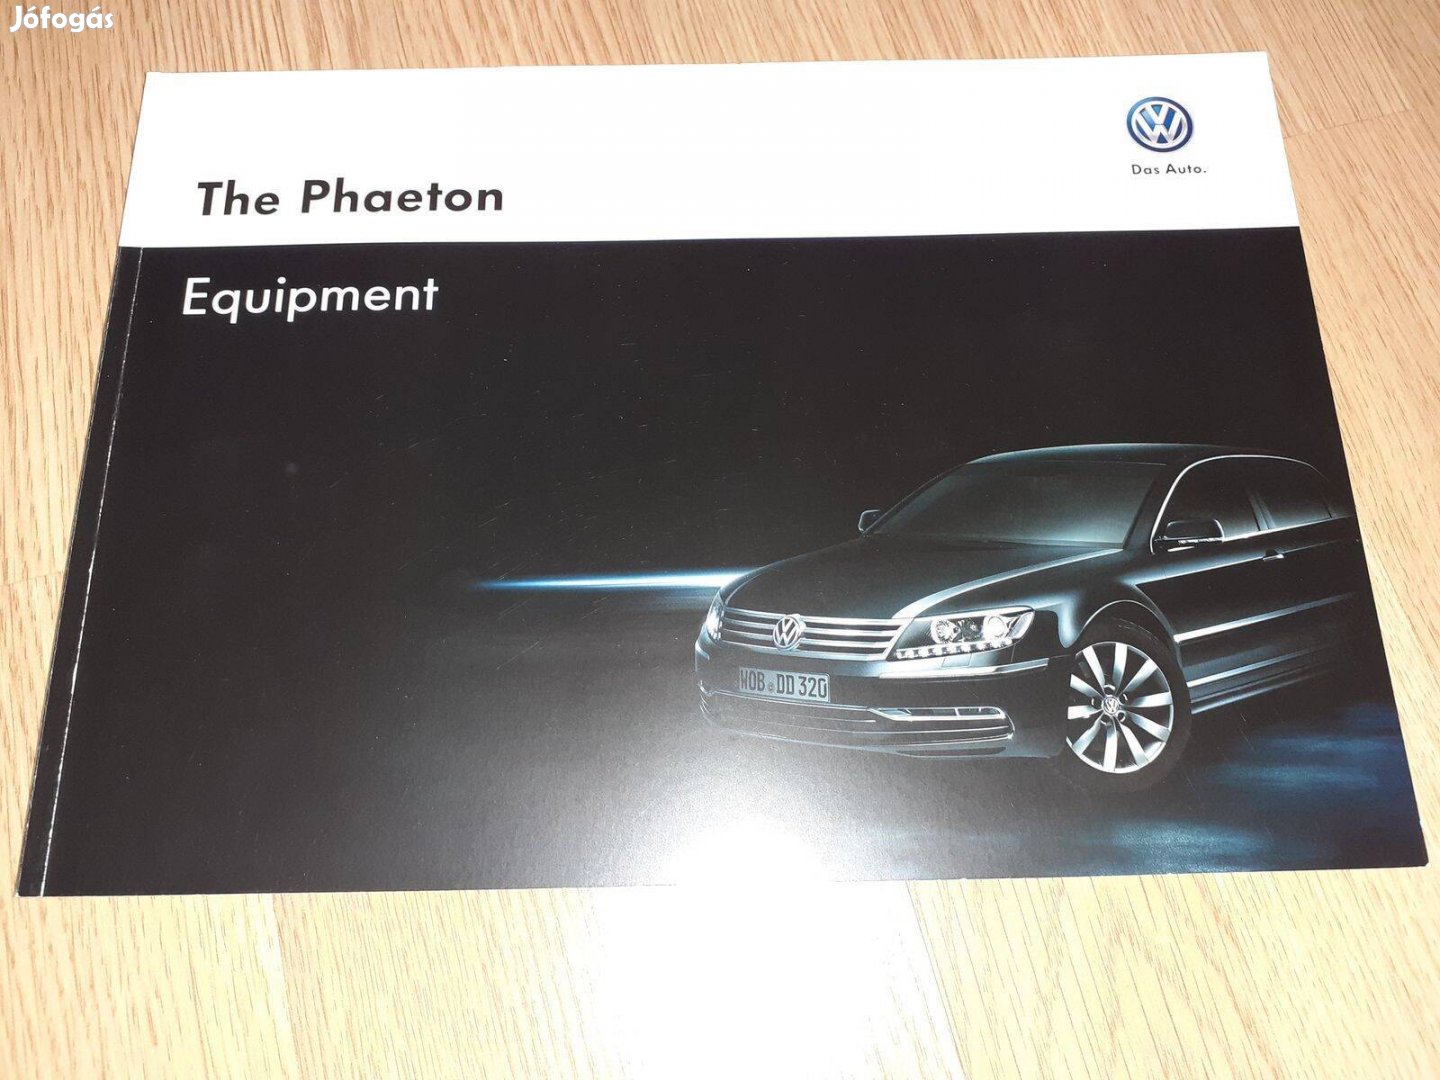 Volkswagen Phaeton Equipment prospektus - 2012, angol nyelvű